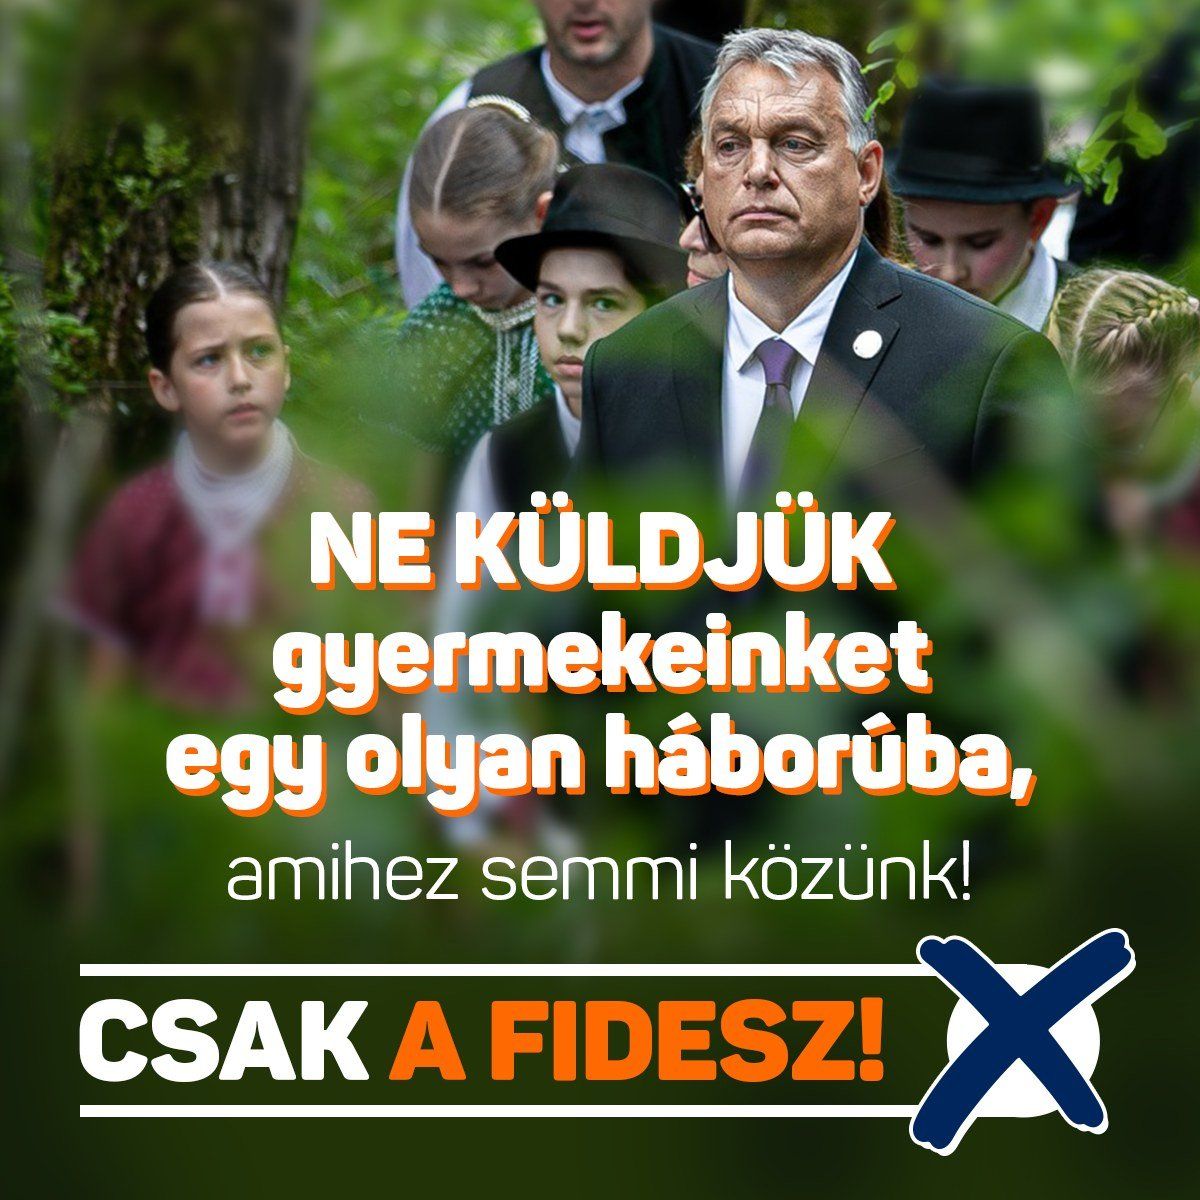 A Fidesz üzenete a hajrában: ne küldjük a gyermekeinket a háborúba!